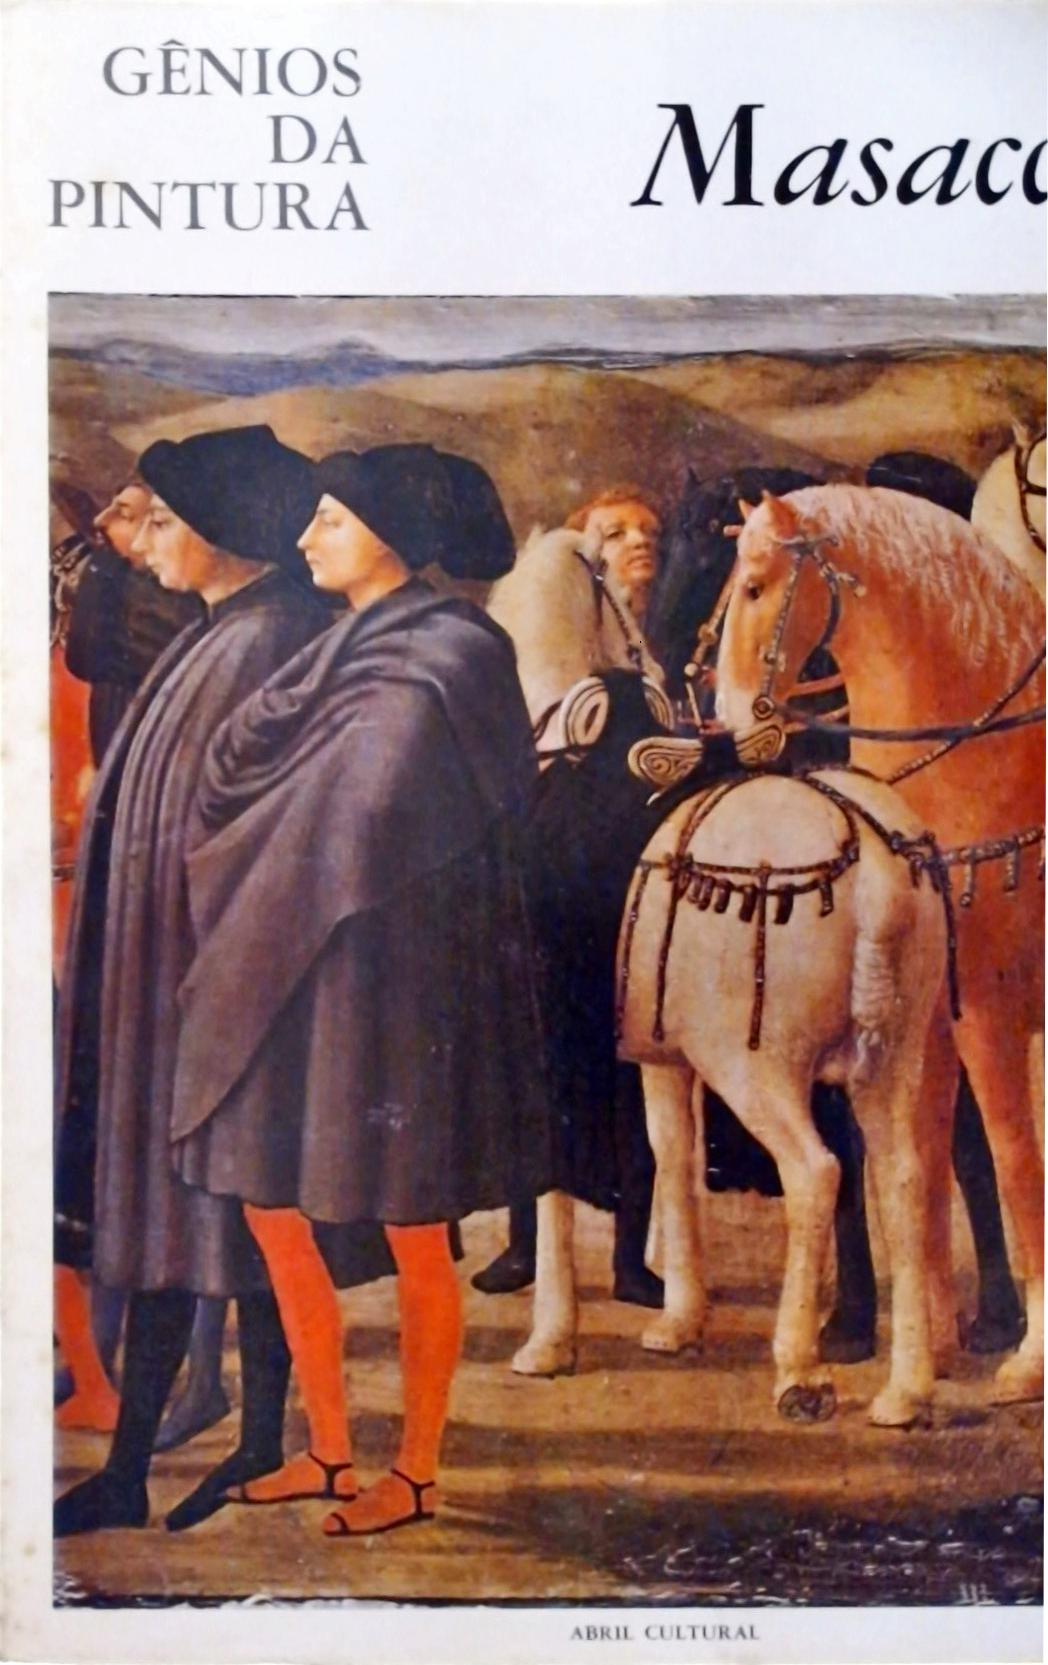 Gênios da Pintura - Masaccio